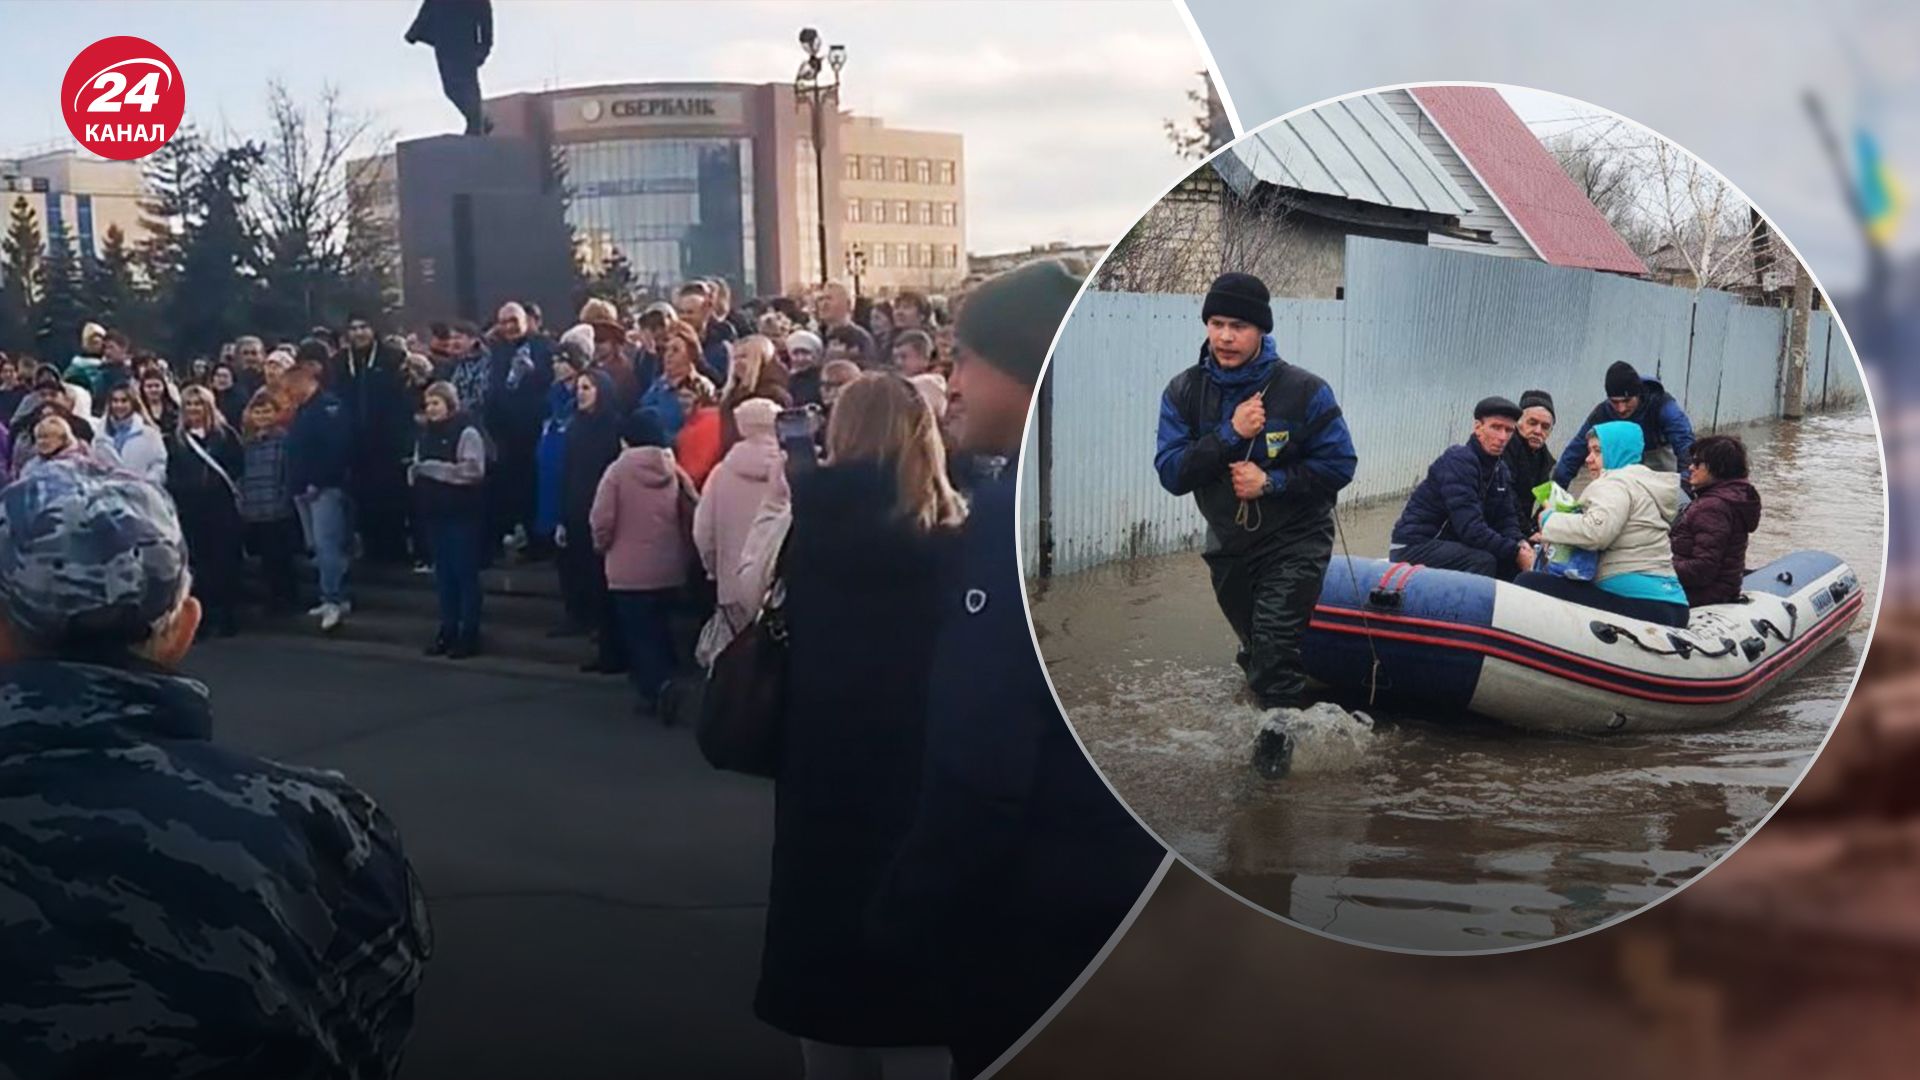 "Путін, допоможи": жителі затопленого Орська вийшли на протест, поліція хоче розігнати - 24 Канал